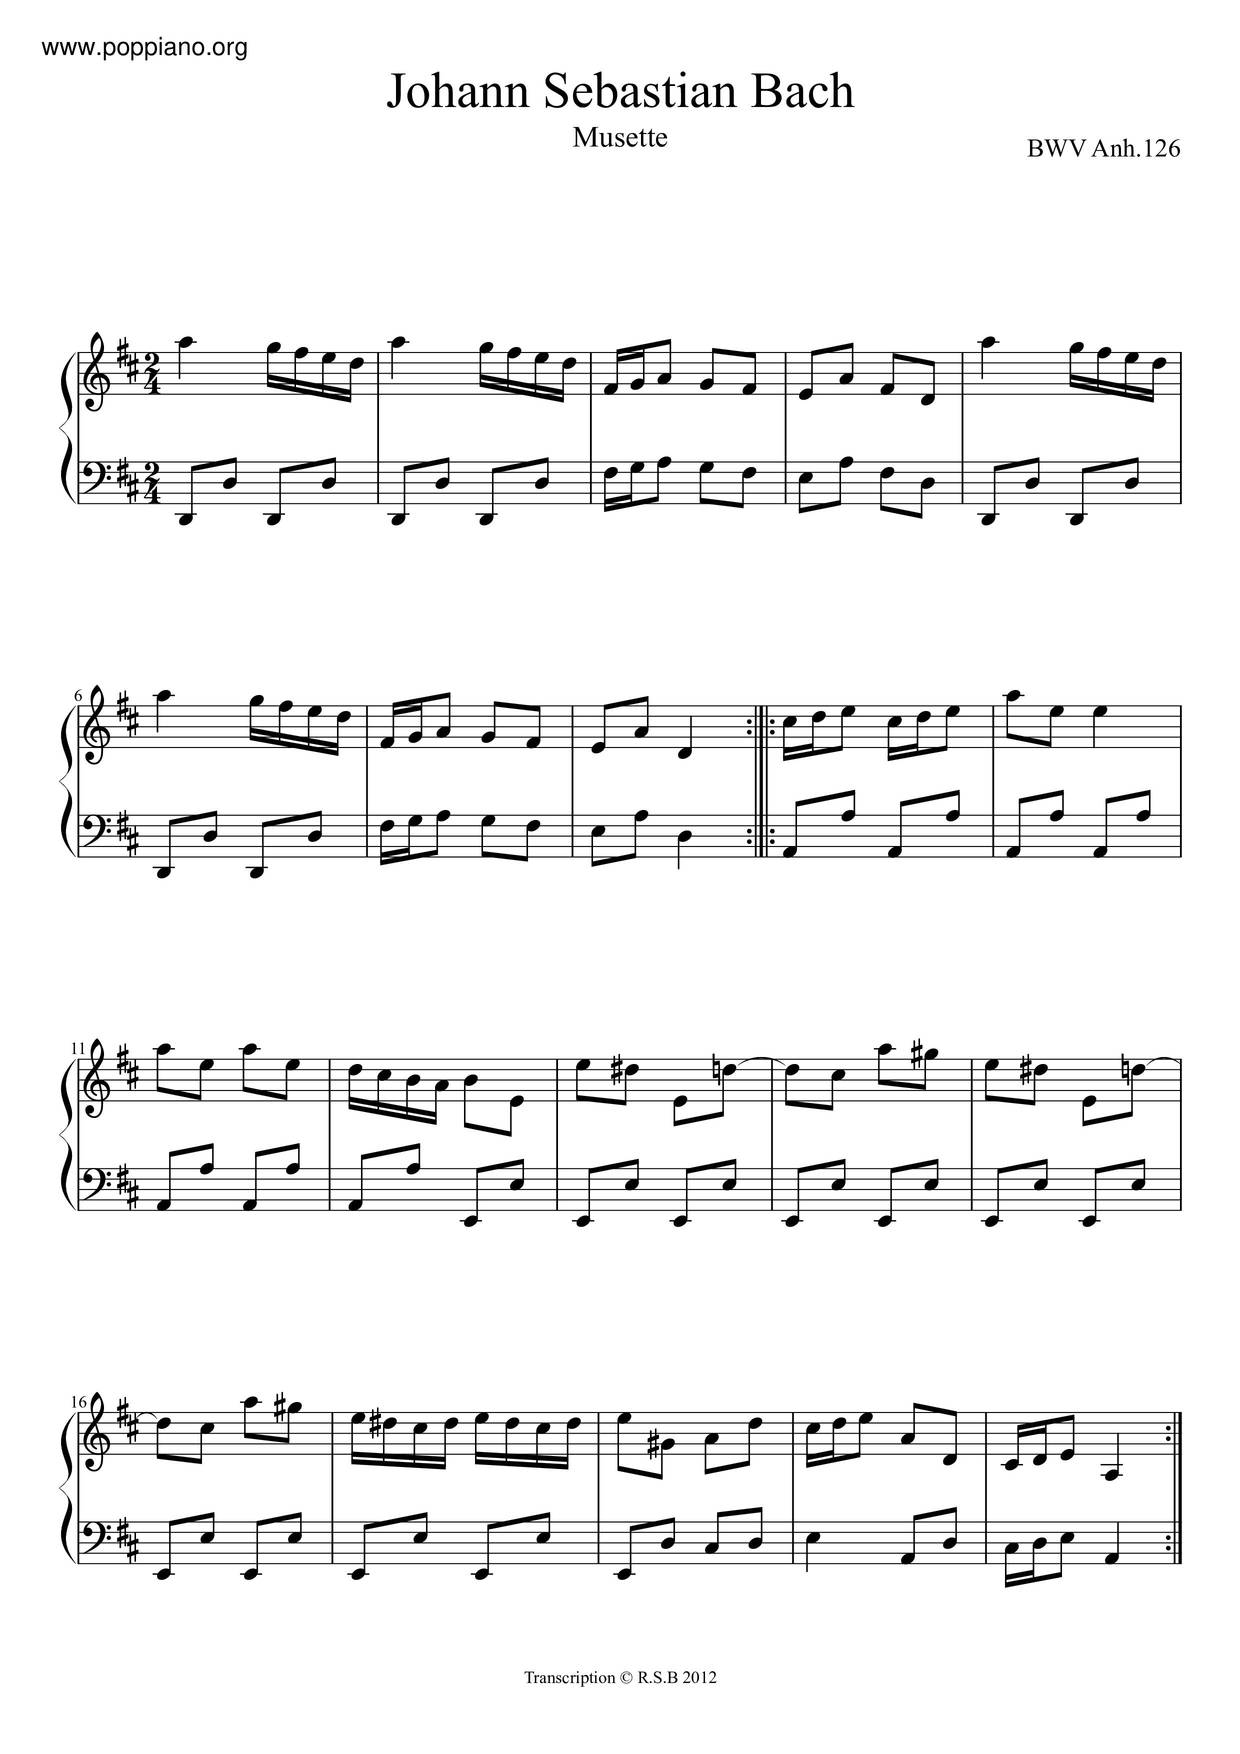 Musette In D Major, BWV Anh. 126 Score